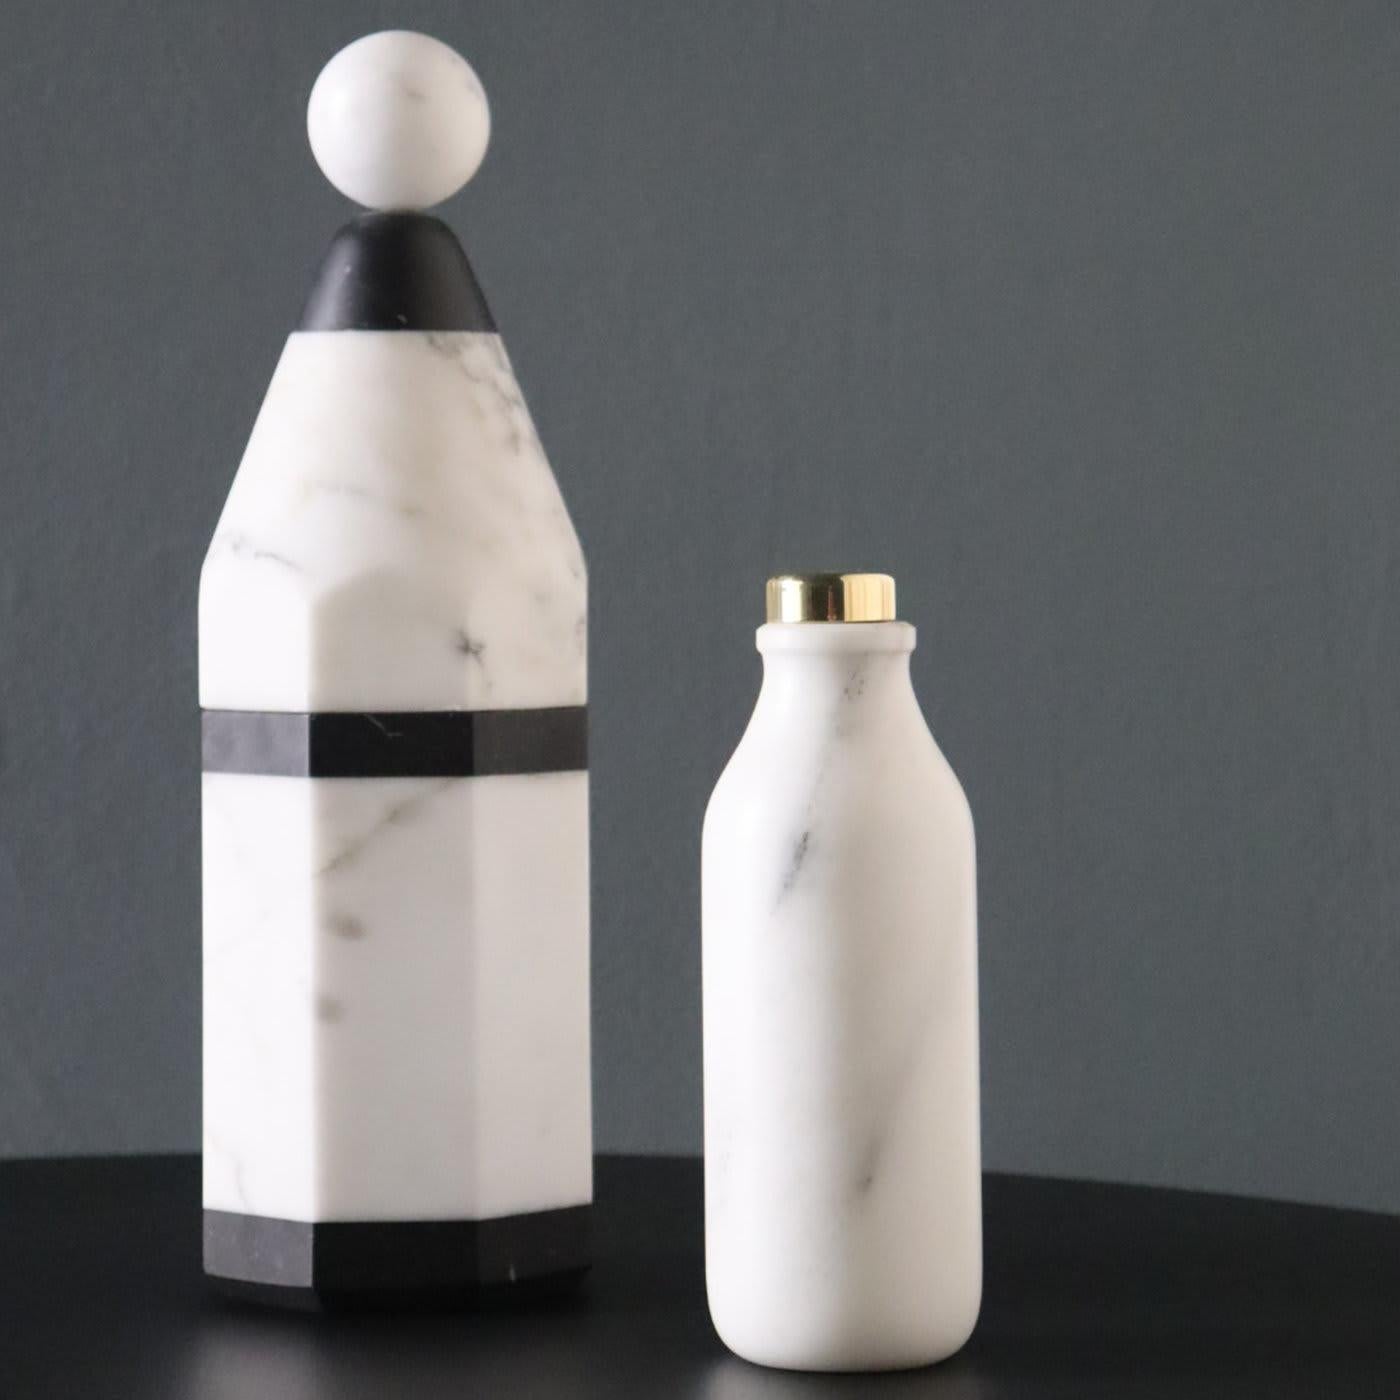 Cette bouteille étonnante fait partie de la collection Coolers, qui allie un design minimaliste et des matériaux précieux, des méthodes artisanales traditionnelles et une sensibilité contemporaine, pour donner naissance à des bouteilles à la fois